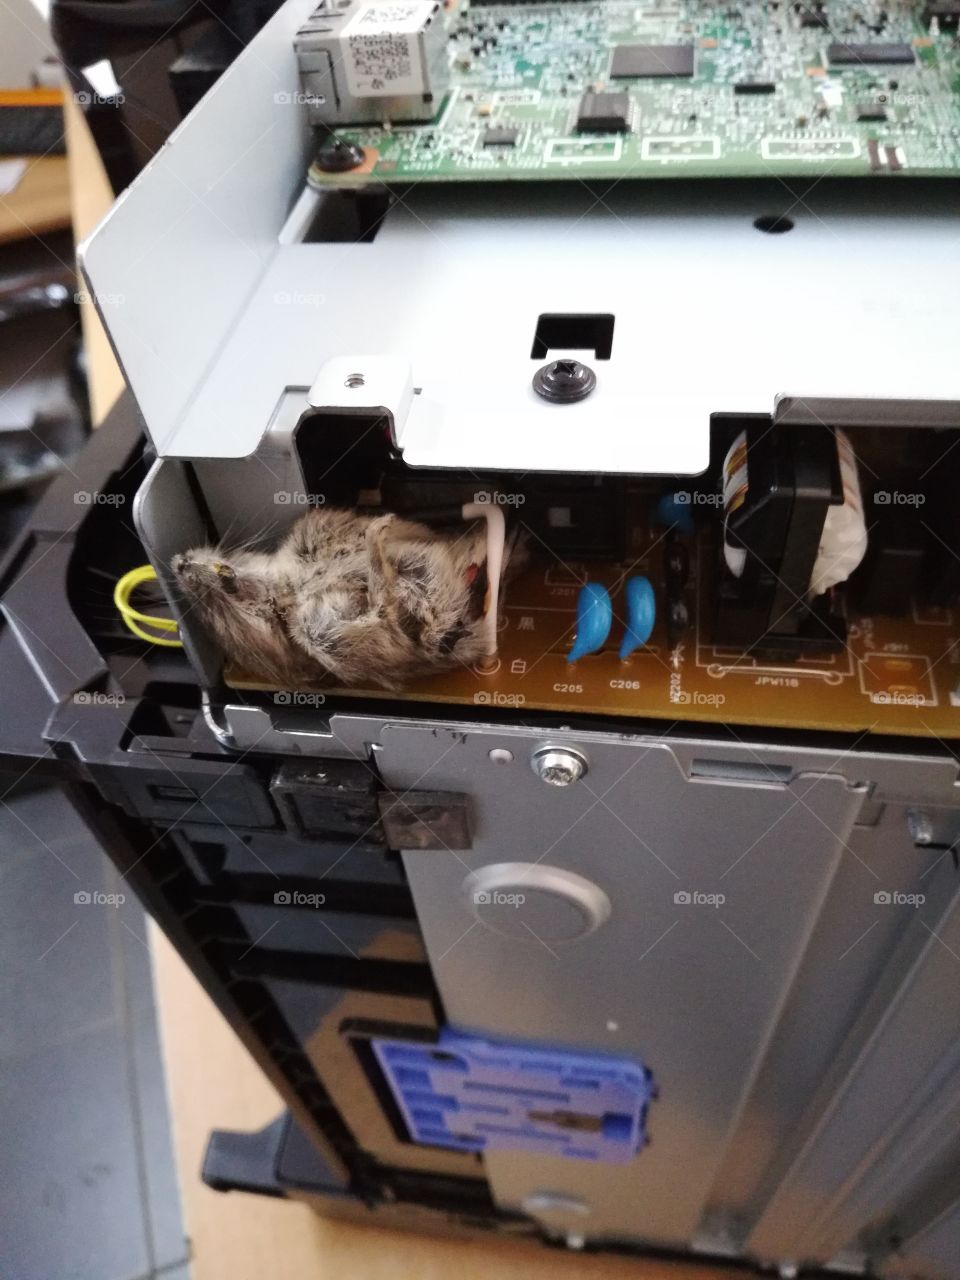 бывает что аппарат плохо работает, потому что в  нём мышь